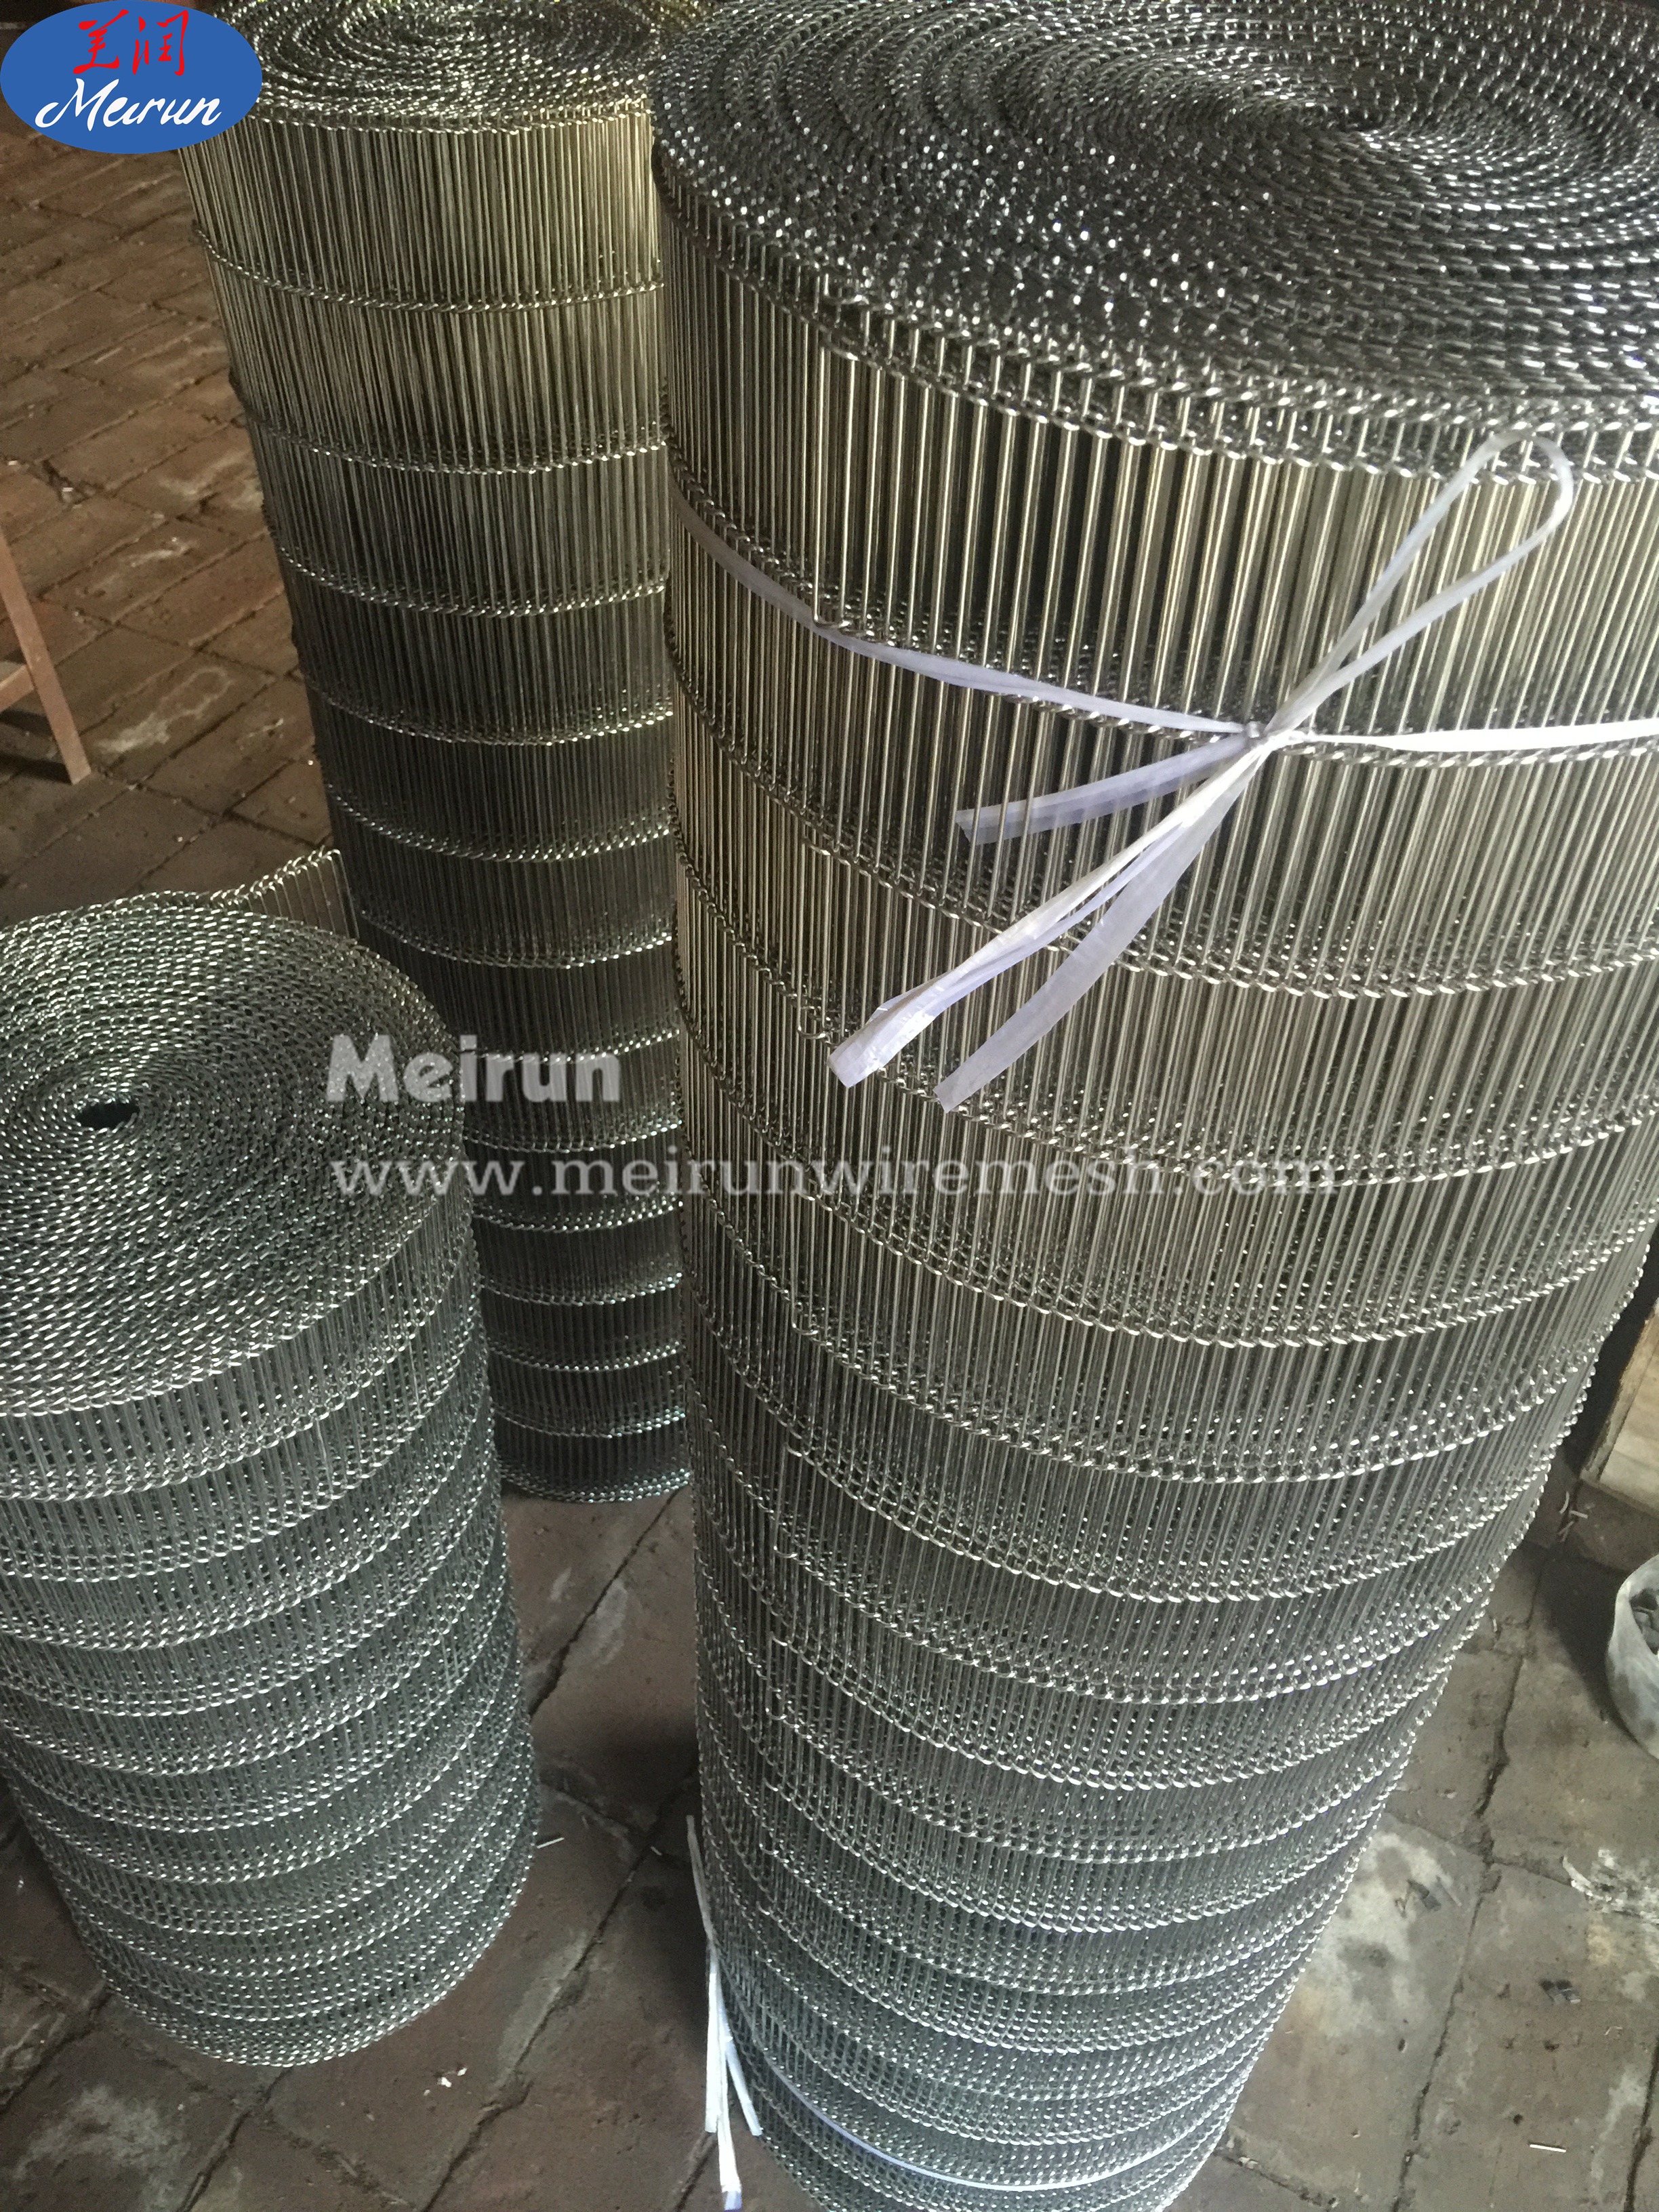 Stainless Steel Spiral Woven Wire Mesh Conveyor Belt Machine 